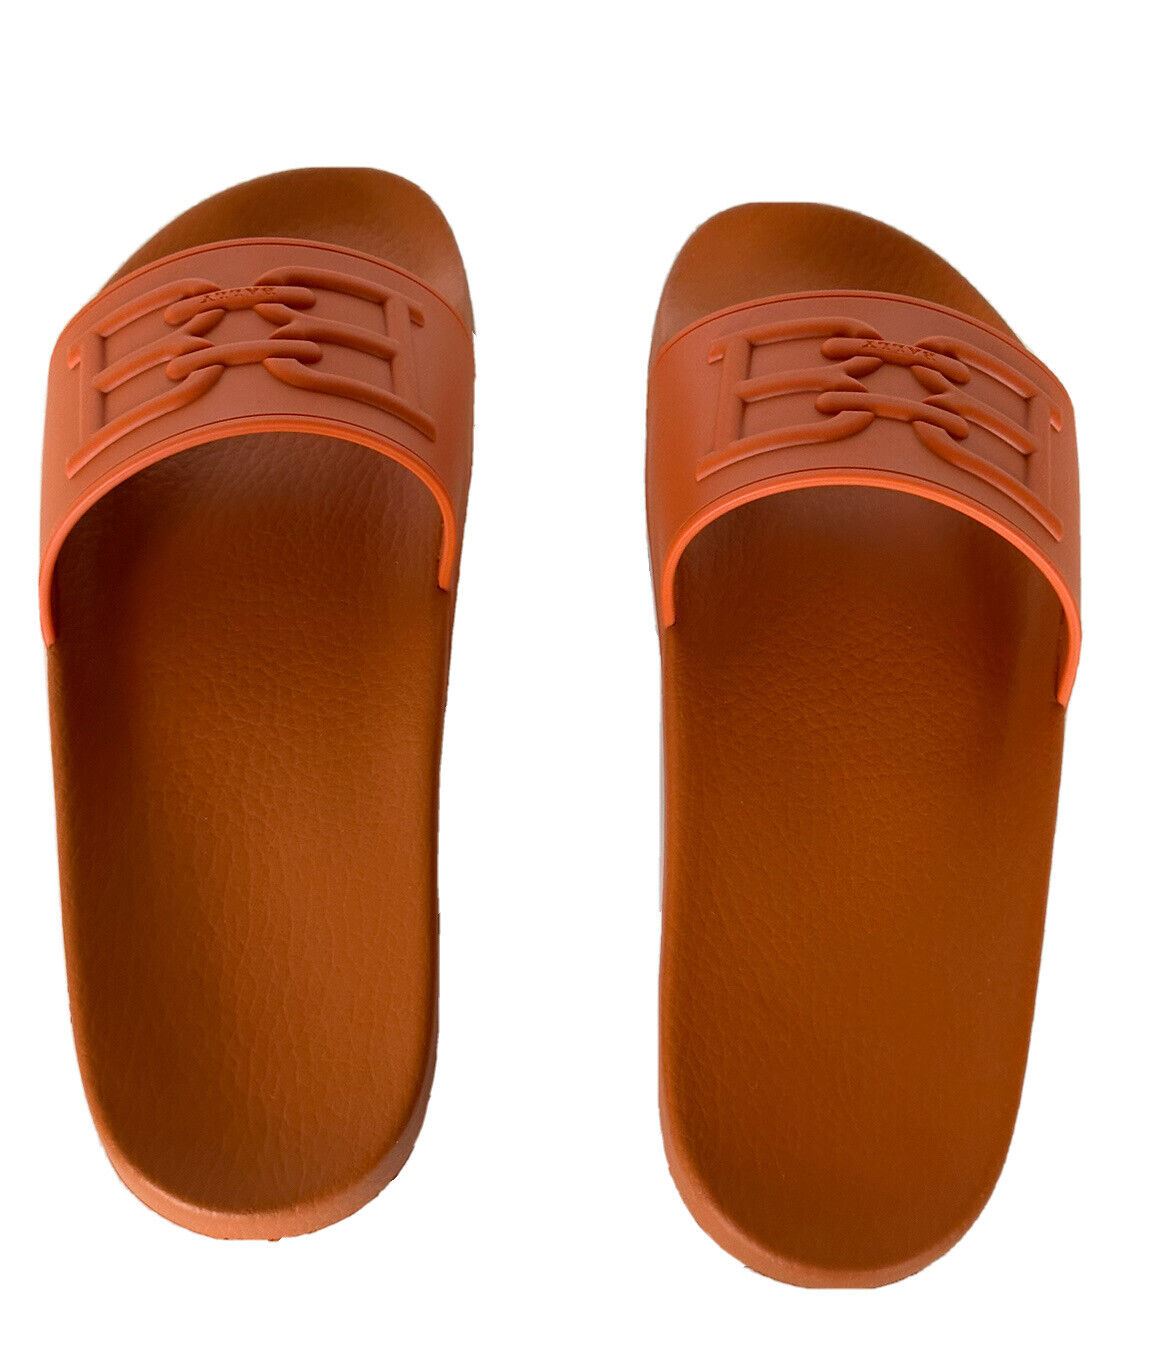 Мужские резиновые сандалии NIB Bally Scotty с логотипом Mandarin, 11, США, 6300612, Италия 